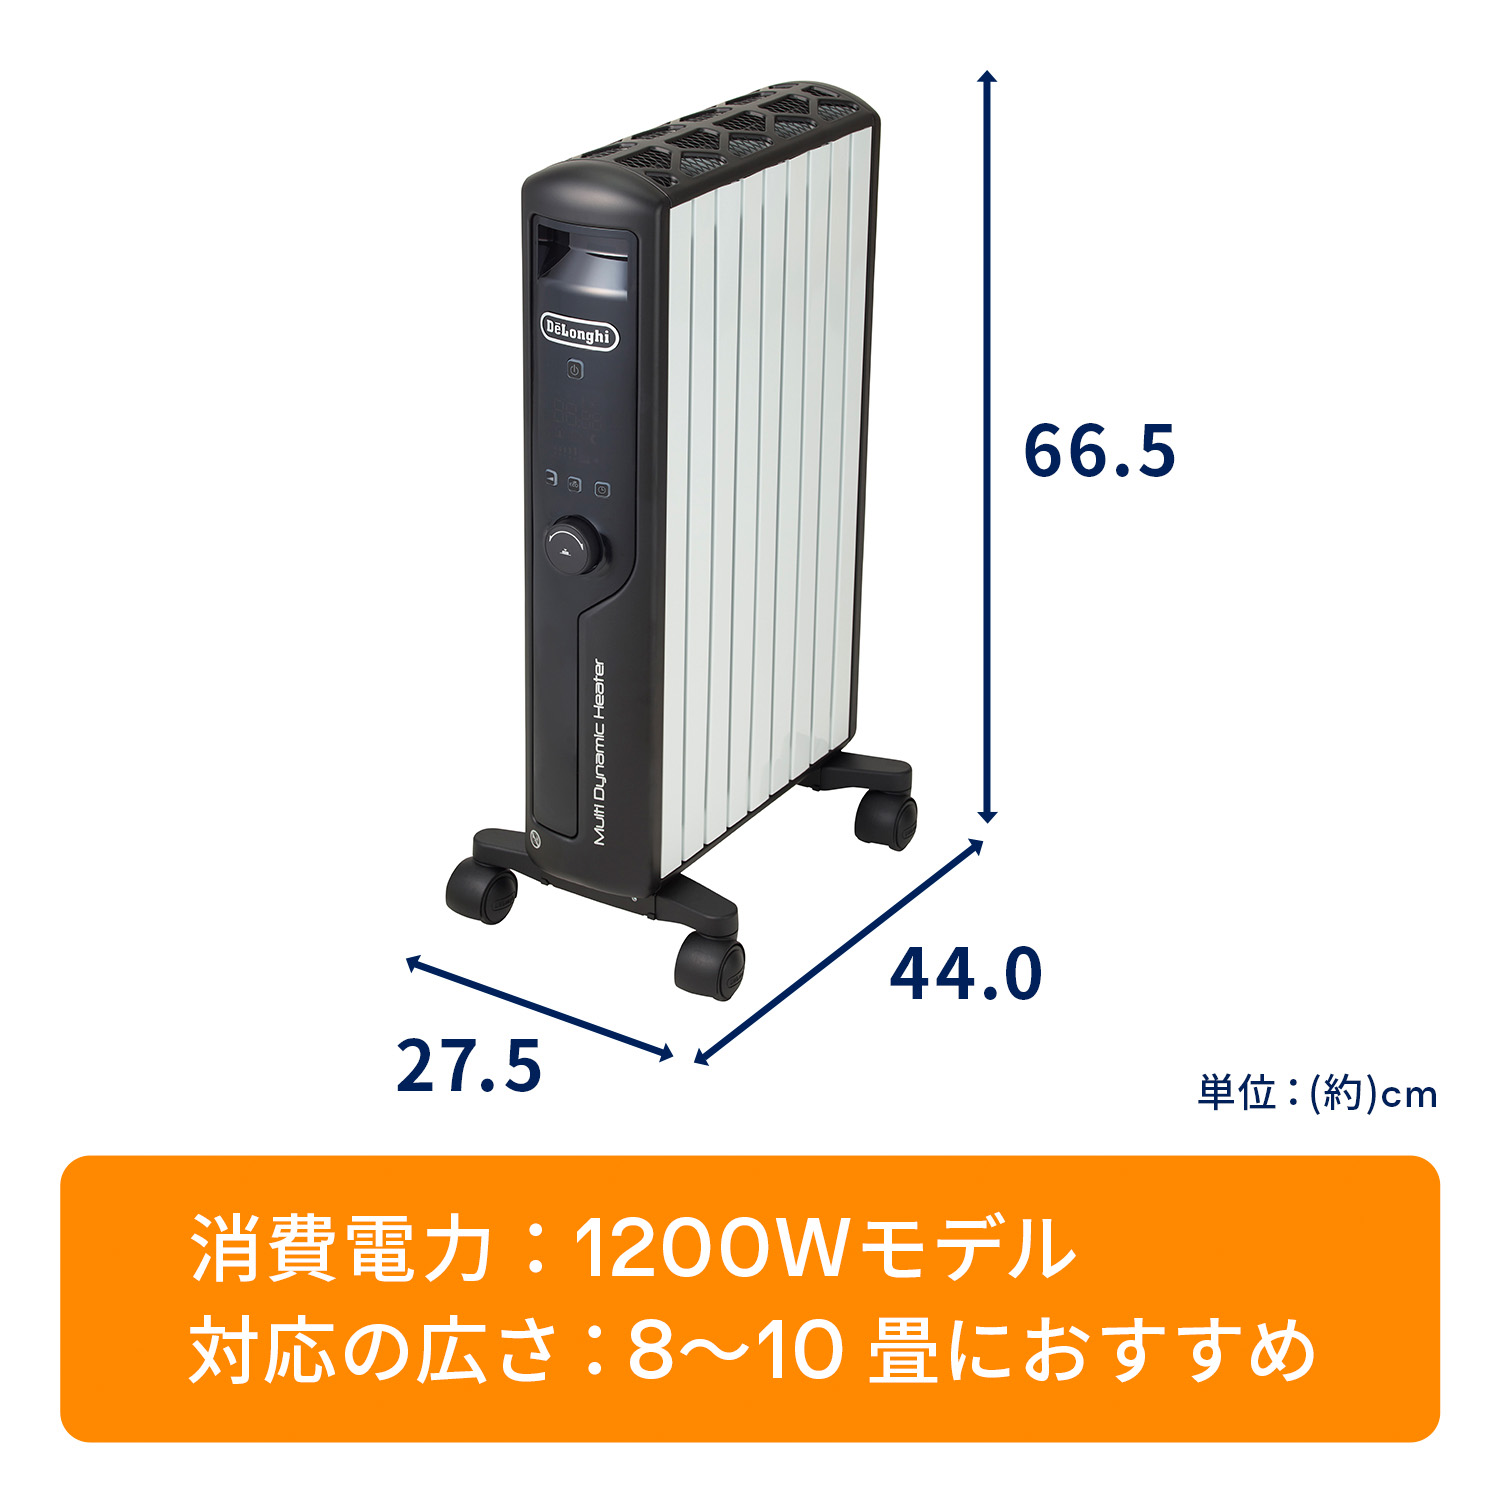 デロンギ マルチダイナミックヒーター MDHU12-BKの製品情報 | ゼロ風暖房デロンギ ヒーター 風が出ないのに、部屋全体が暖かい。